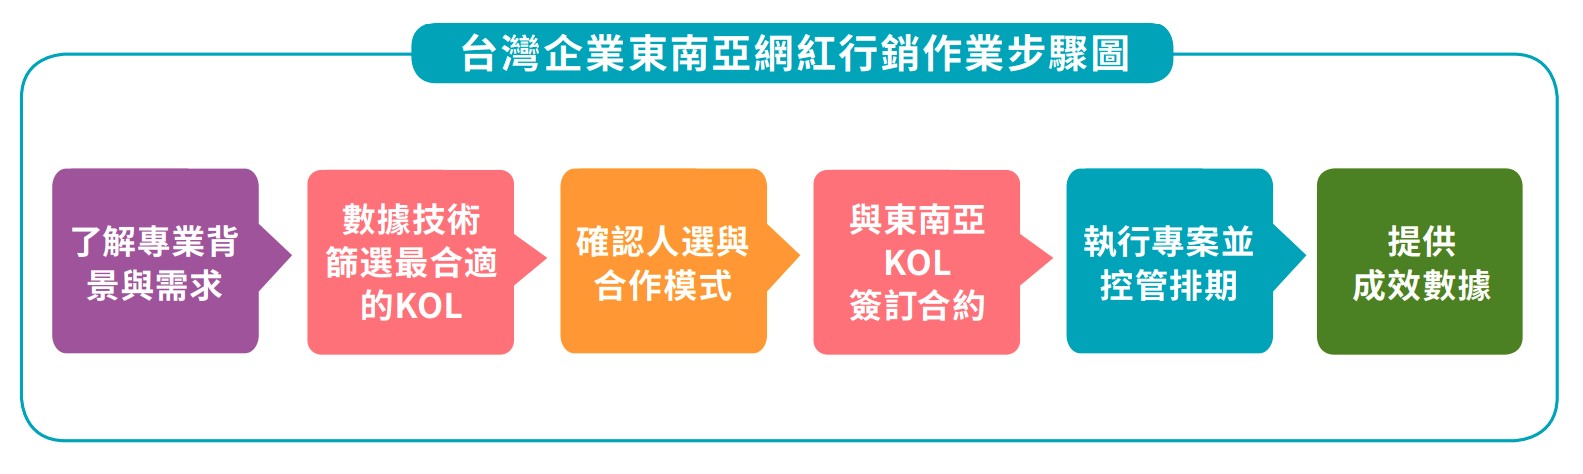 台灣企業東南亞網紅行銷作業步驟圖.jpg